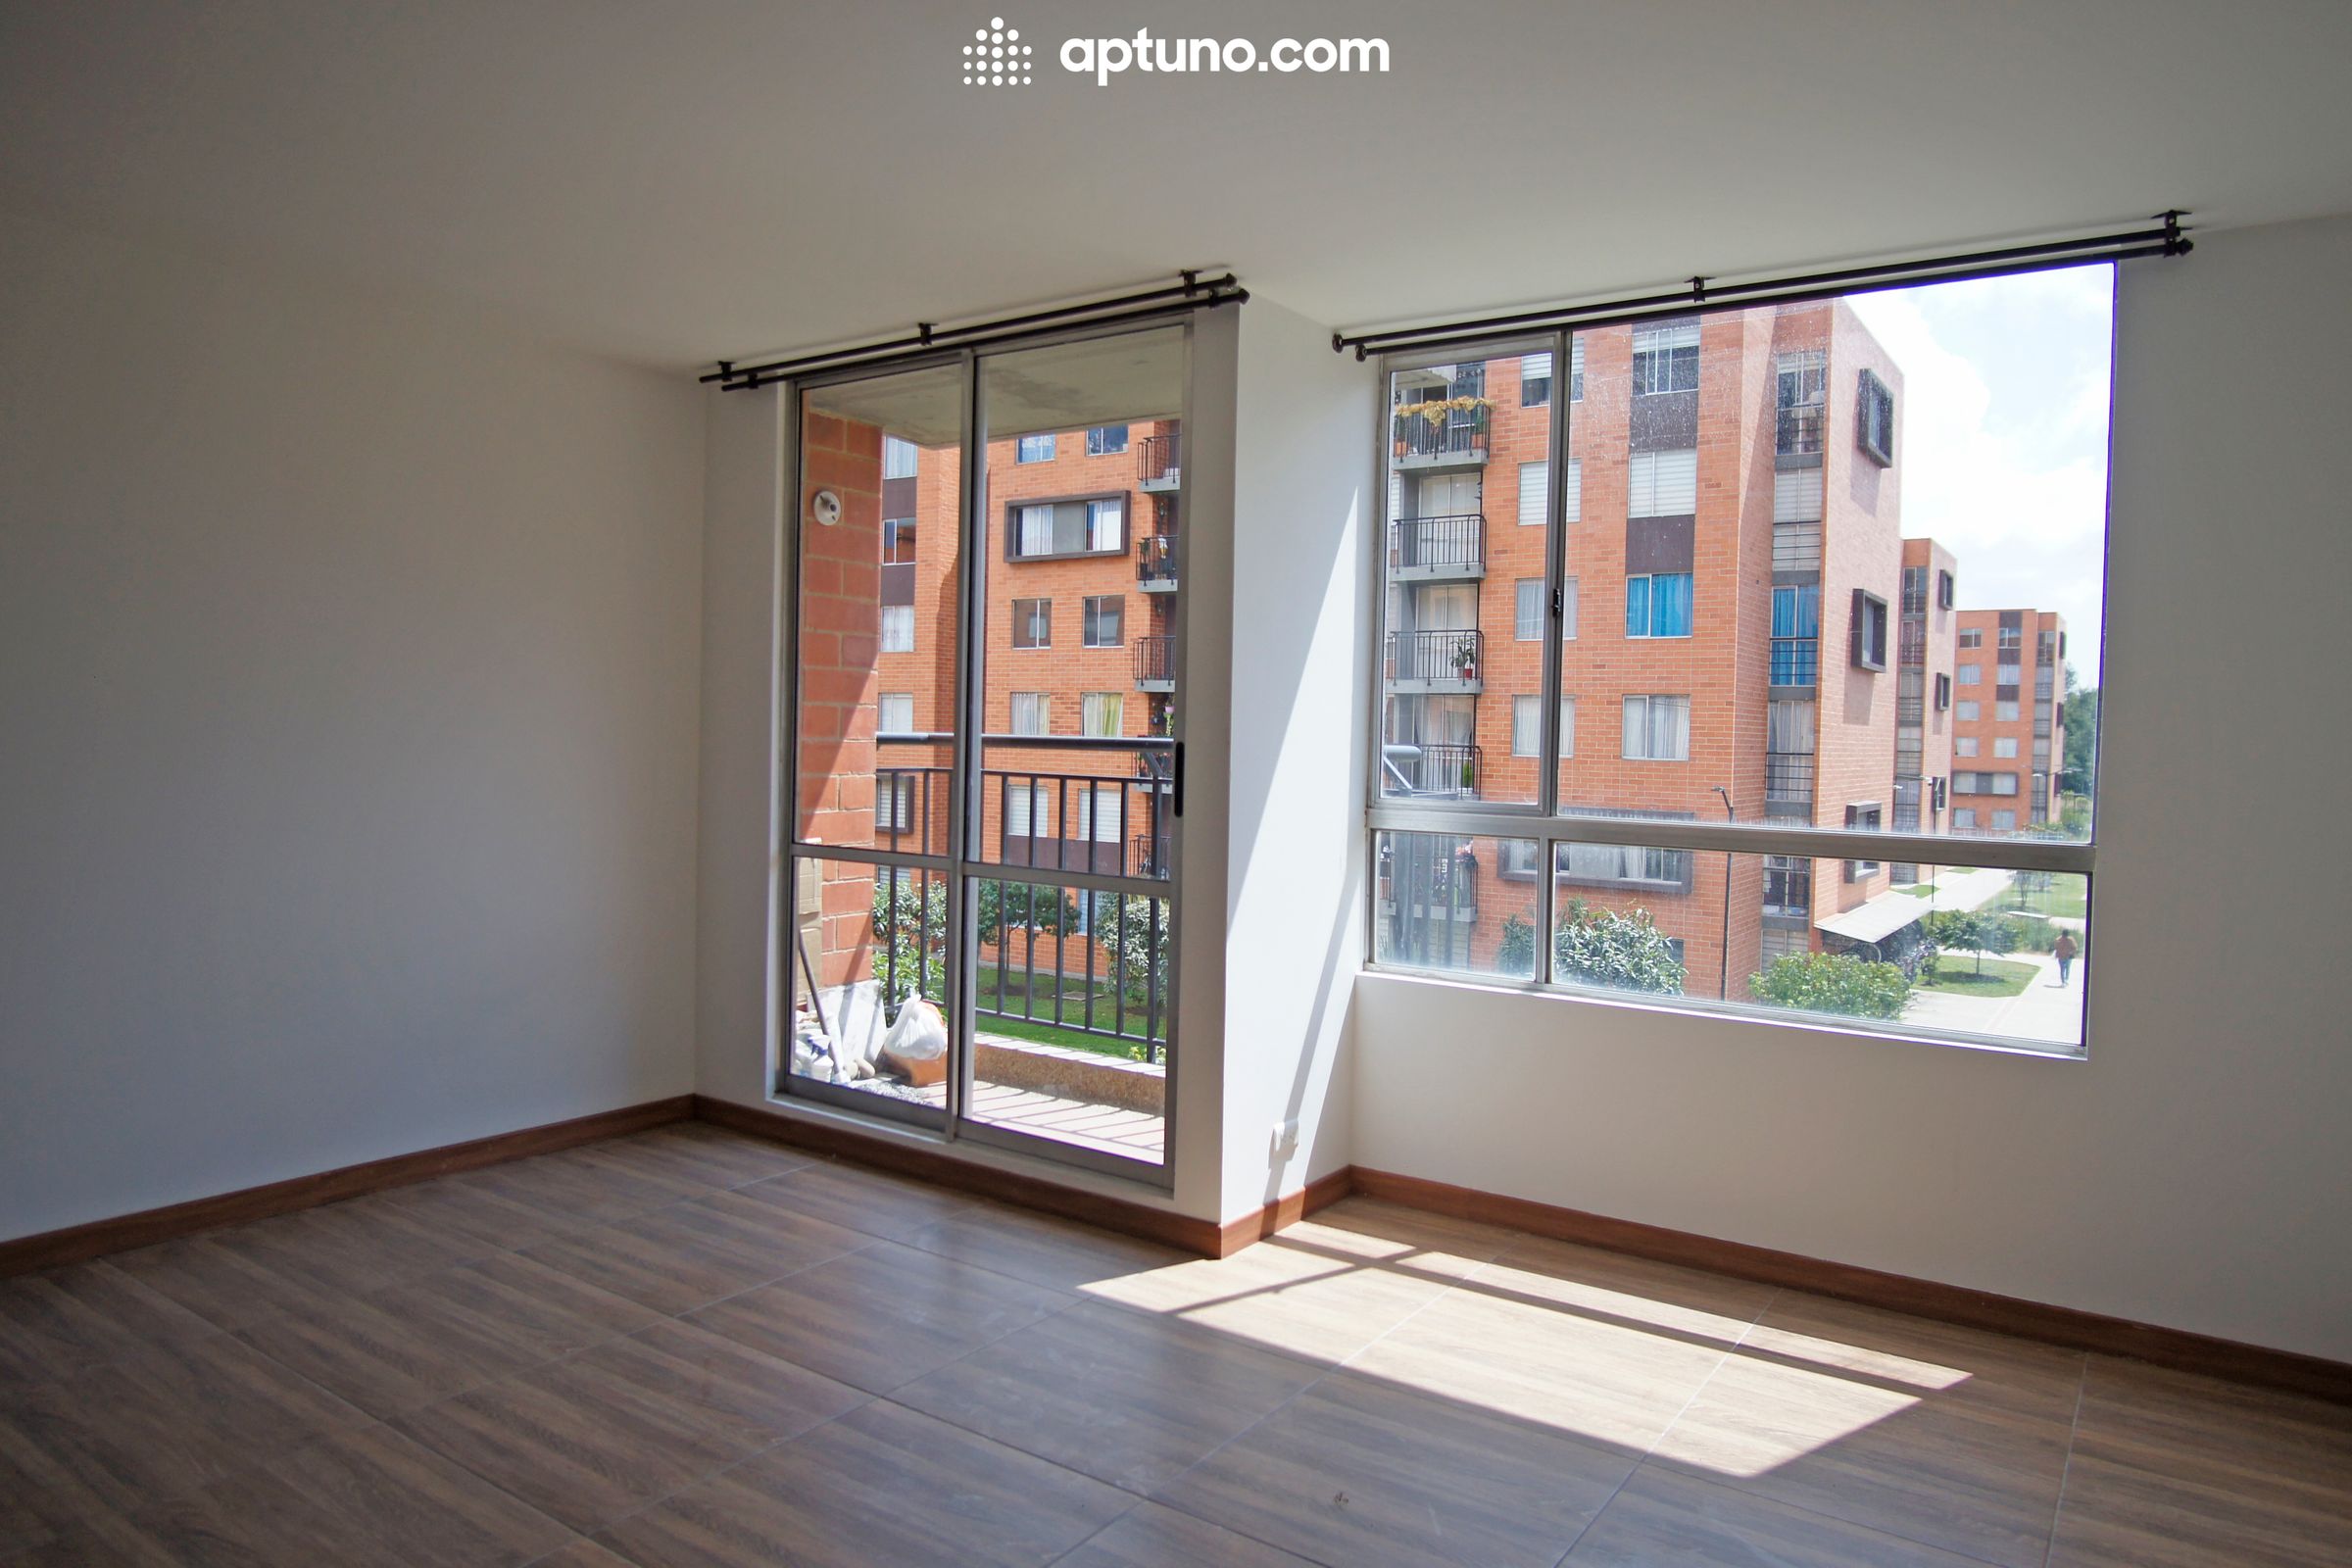 Apartamento en arriendo Madrid 65 m² - $ 900.000,00